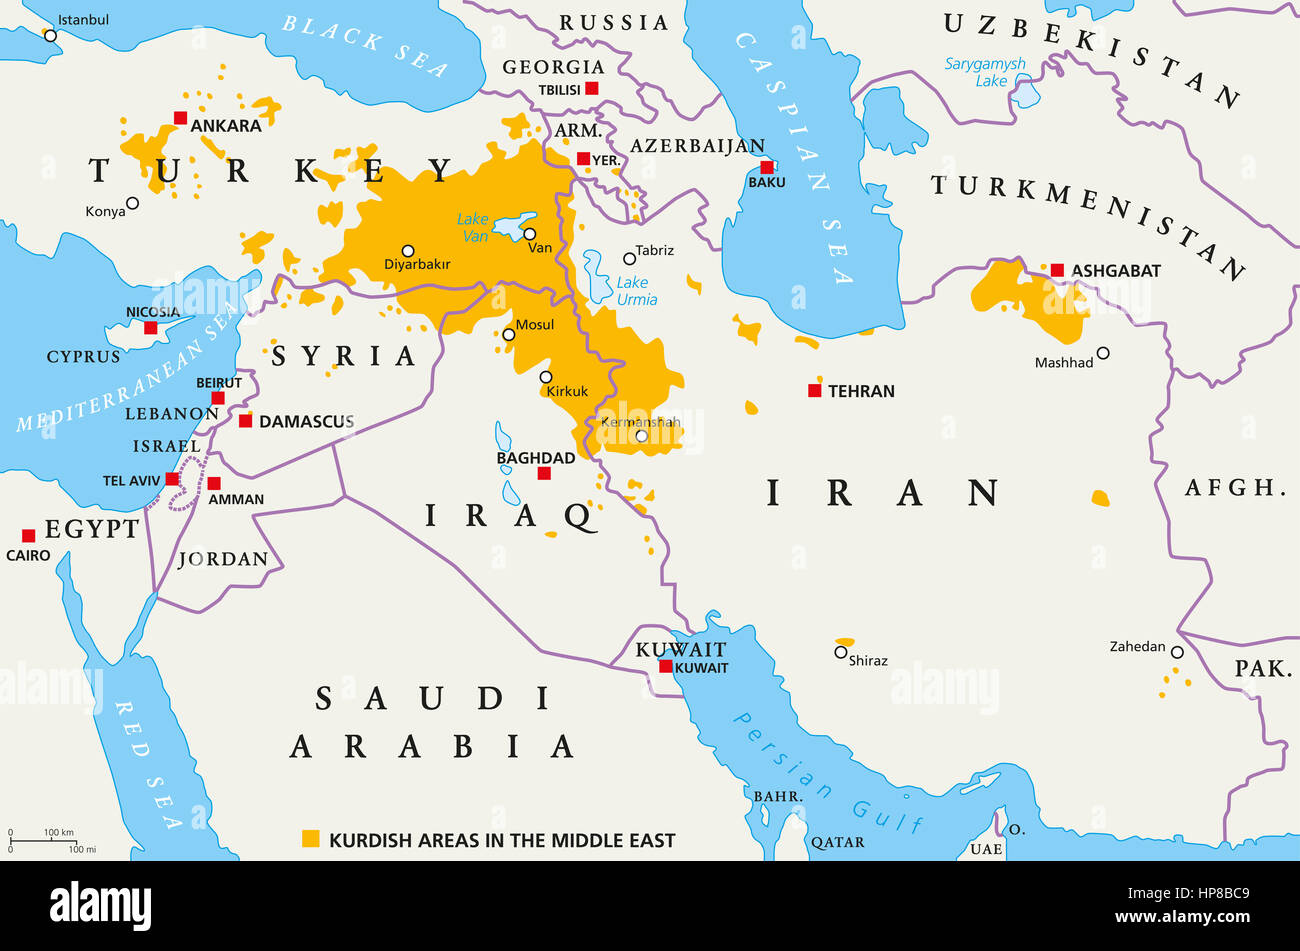 Kurdischen Gebiete im Nahen Osten, politische Karte. Länder mit ihren Hauptstädten, nationale Grenzen und wichtigen Städten. Kurdischen Gebieten in der Farbe orange. Stockfoto